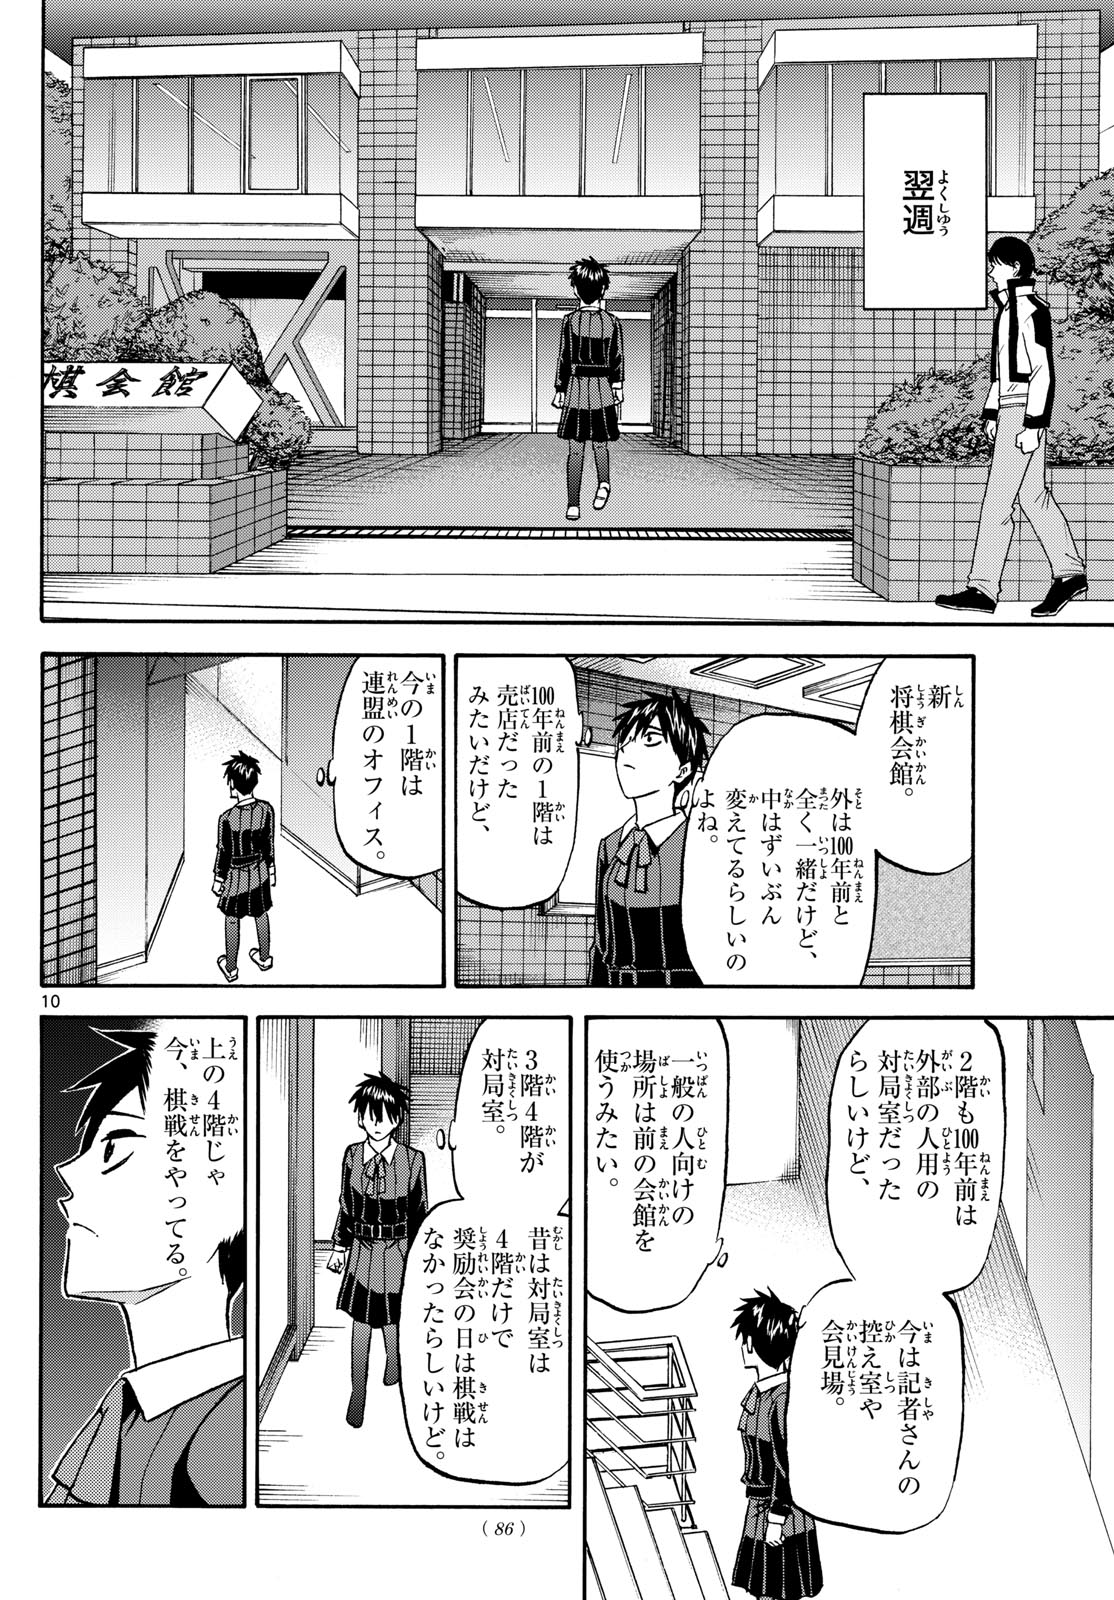 Tatsu to Ichigo - Chapter 186 - Page 10